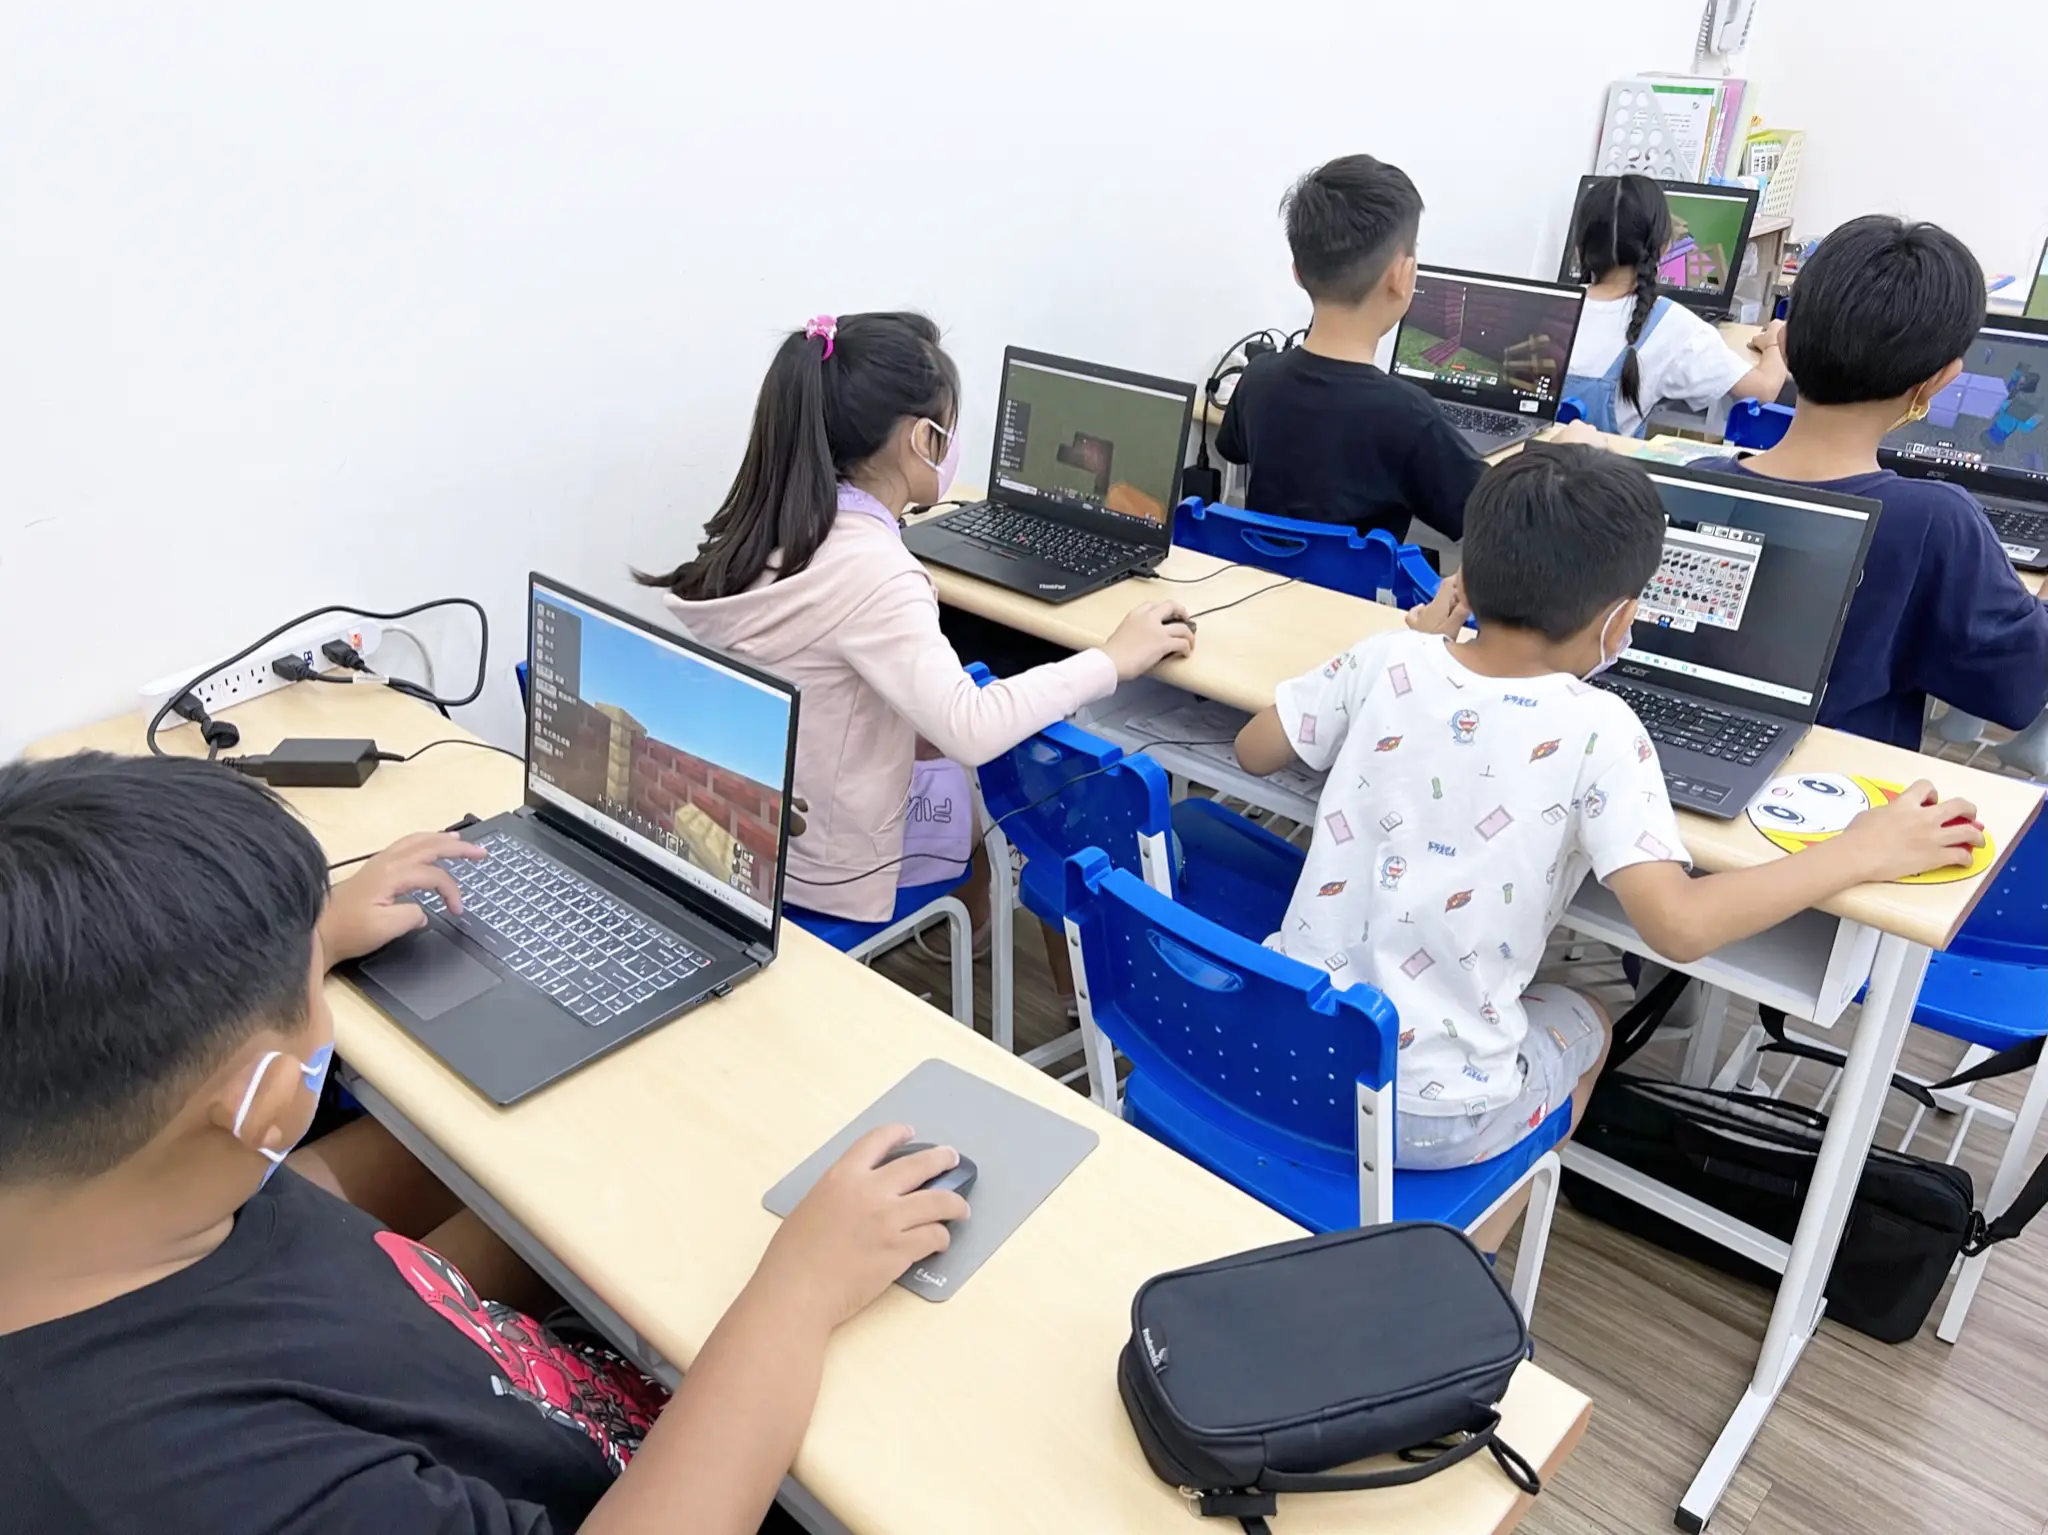 教室中的同學們正在利用電腦遊玩Minecraft教育版。